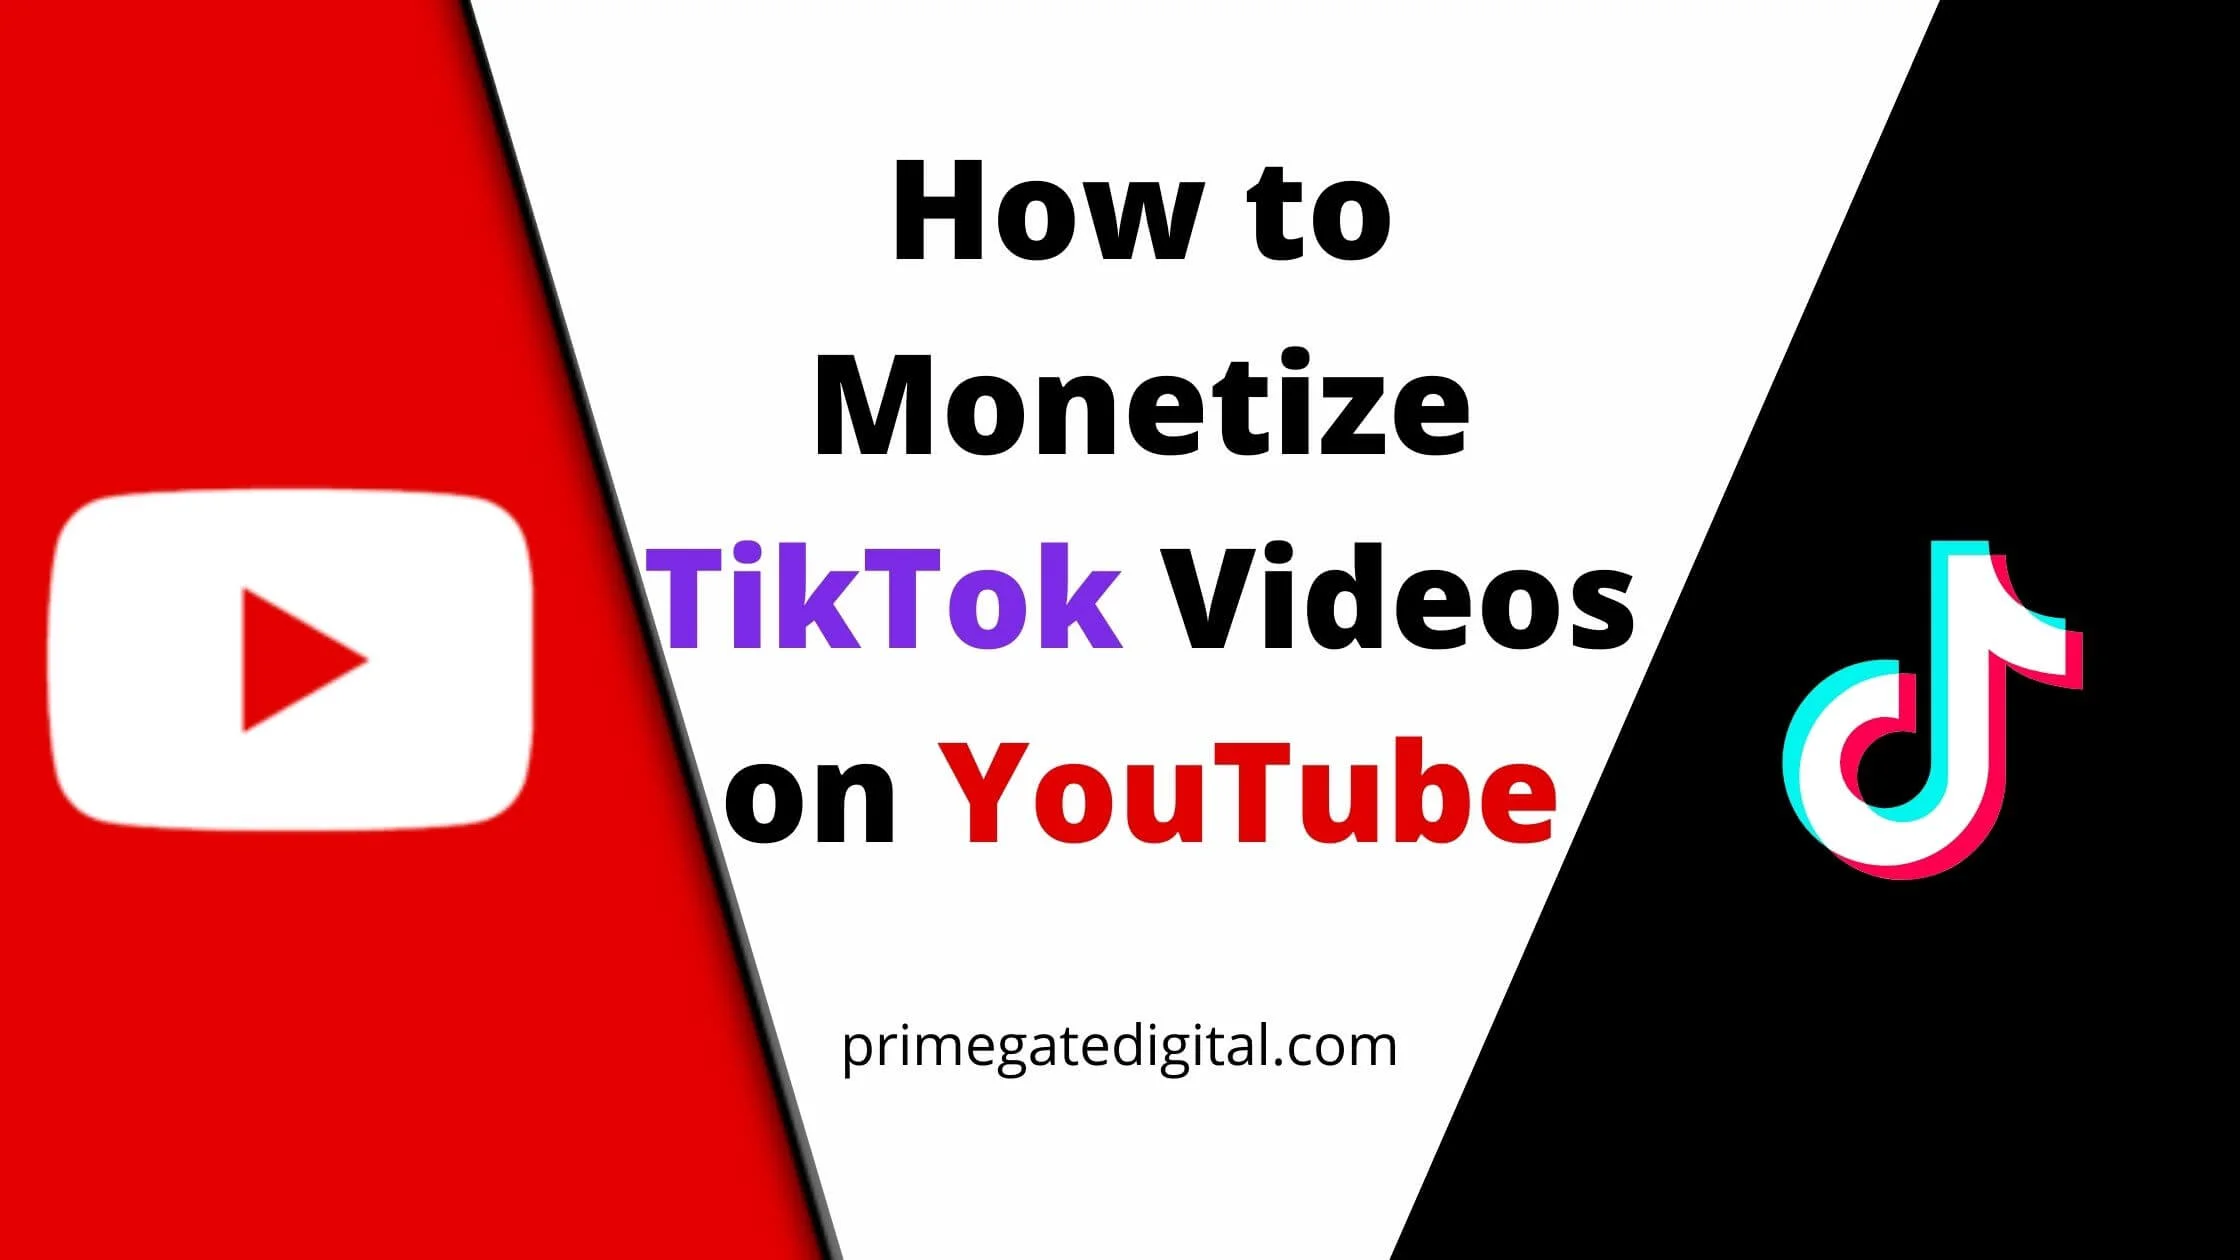 Monetize TikTok Videos on YouTube